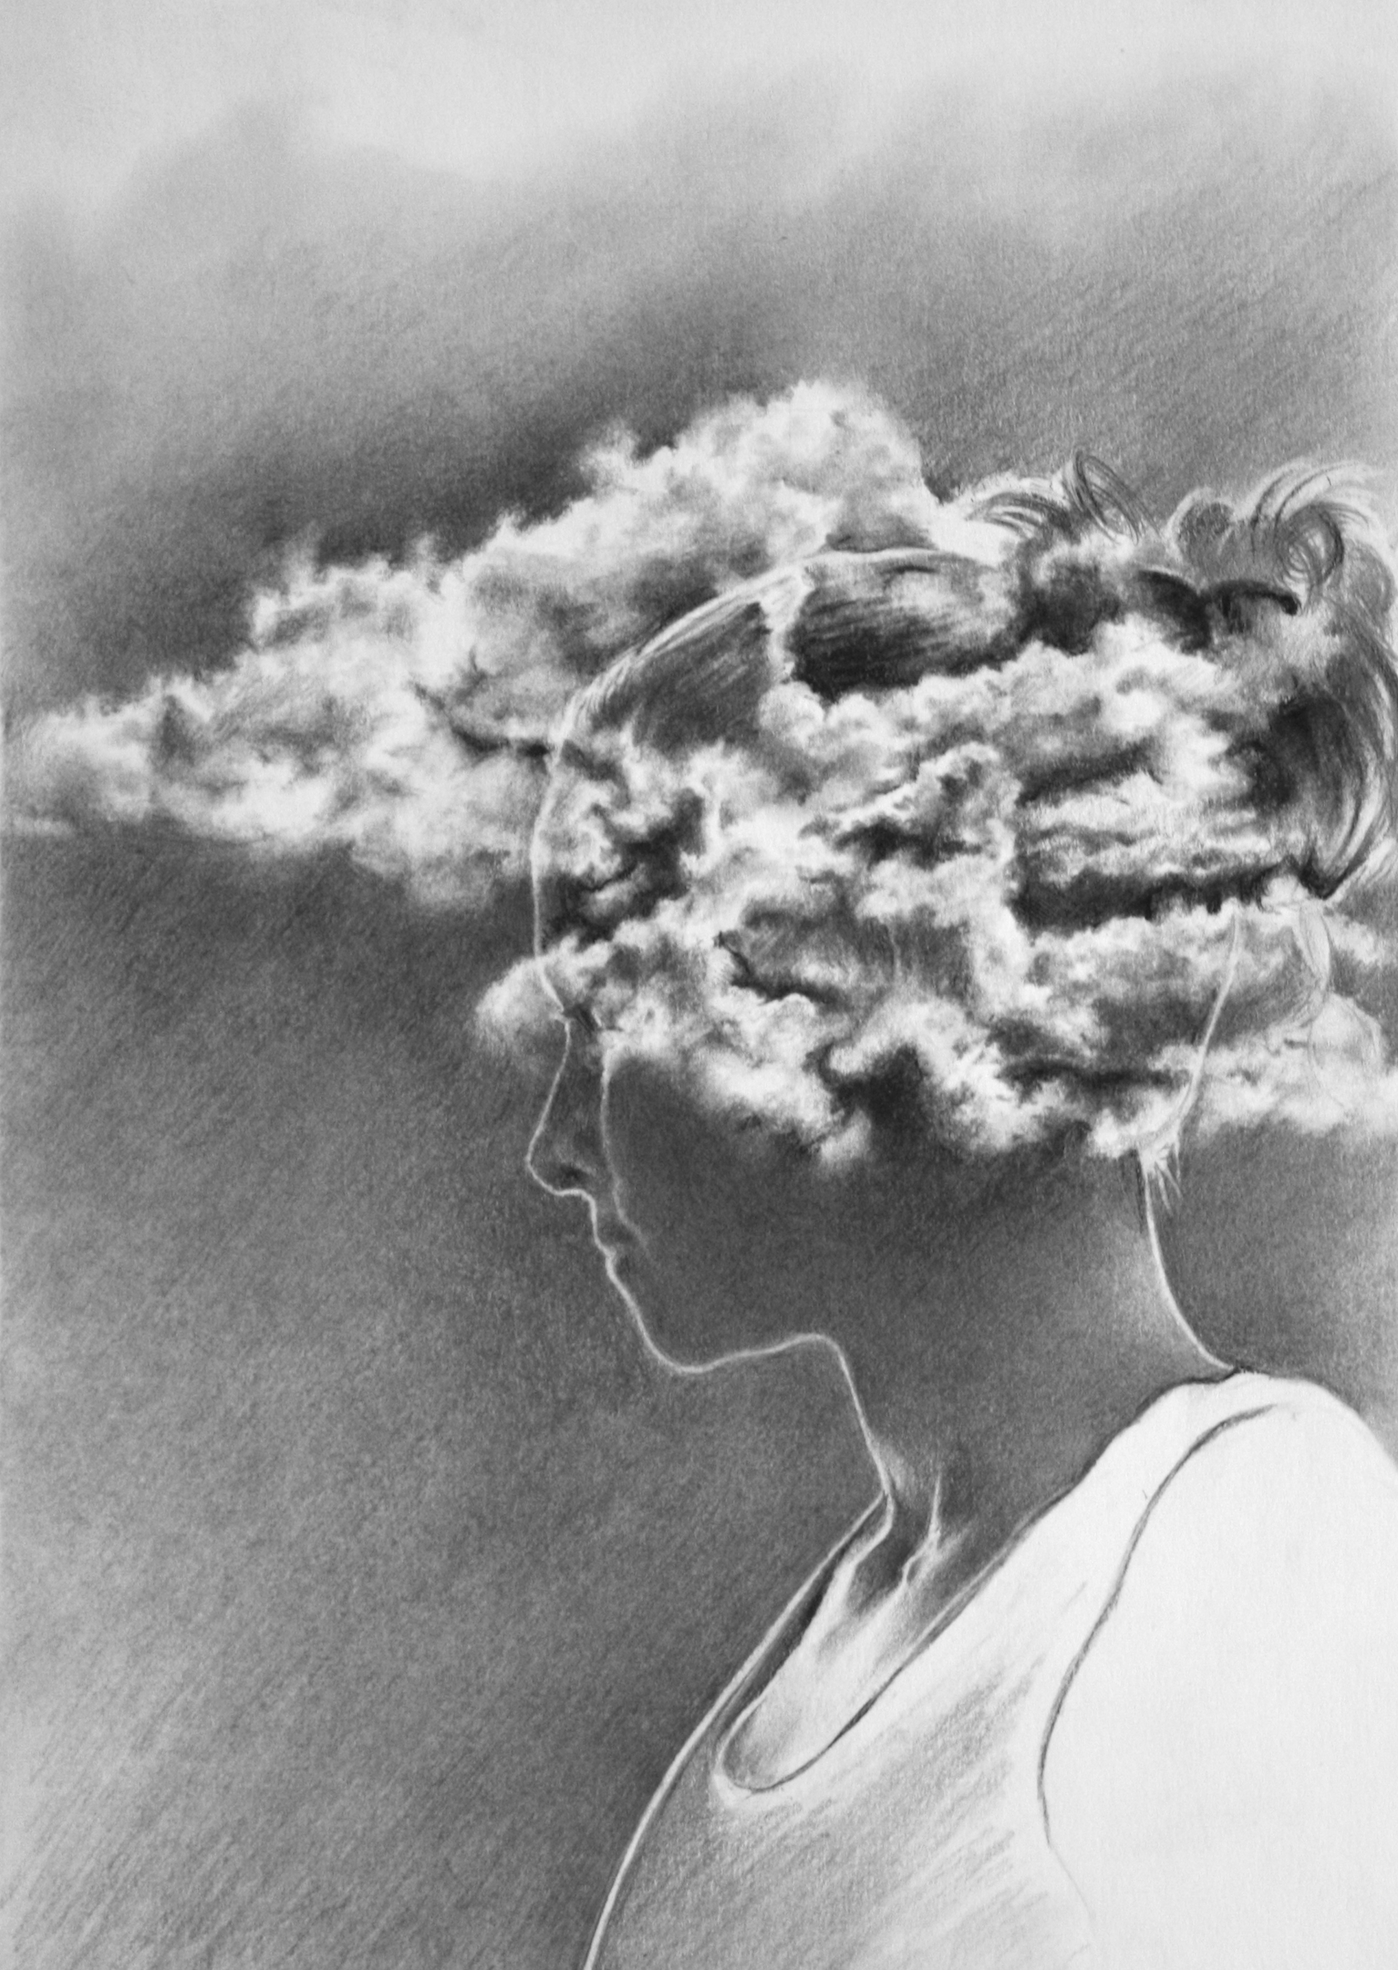 Clouding of Consciousness